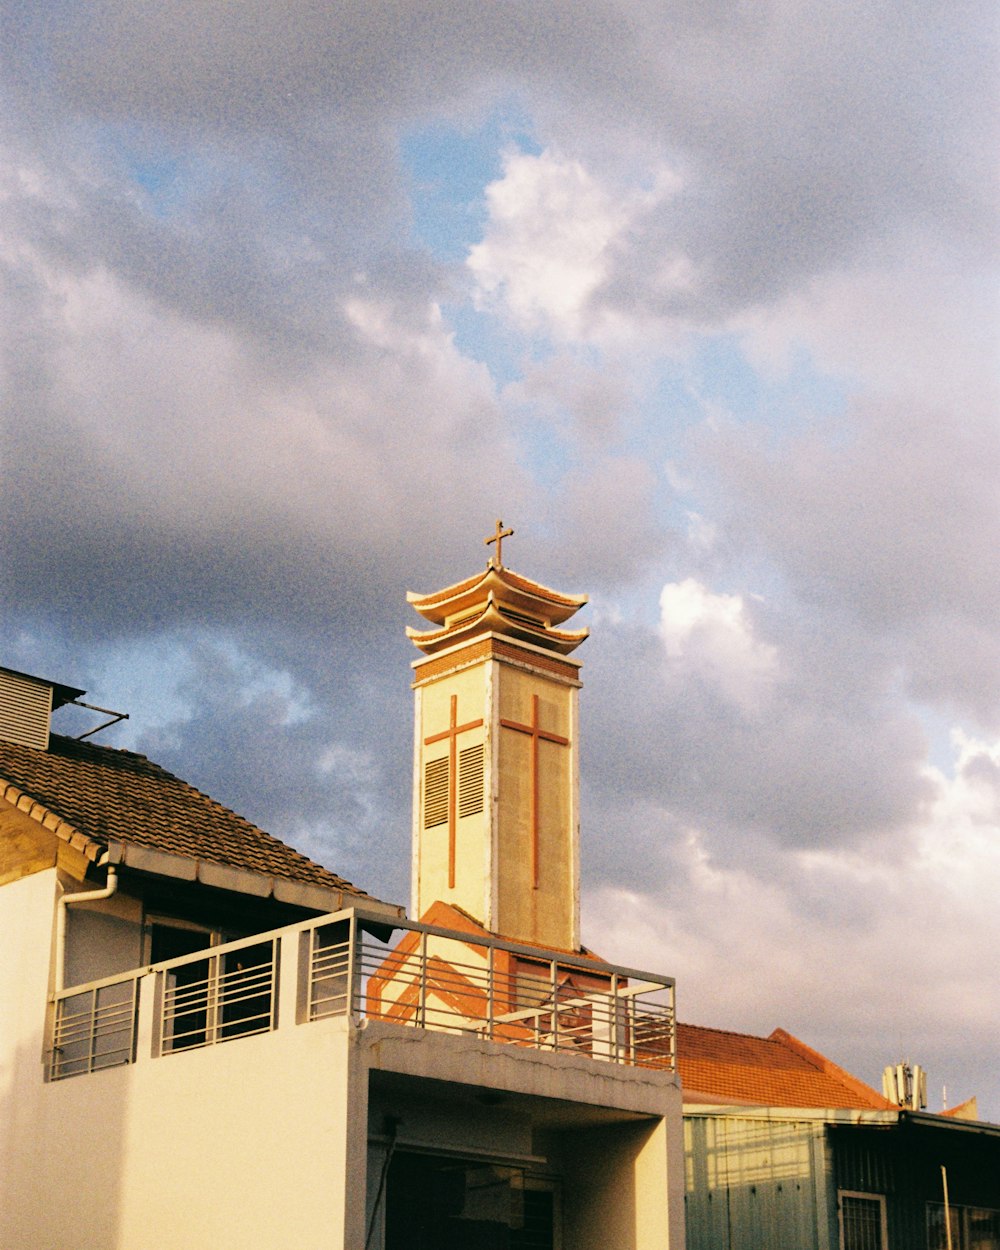 Ein Uhrenturm auf einem Gebäude unter einem bewölkten Himmel